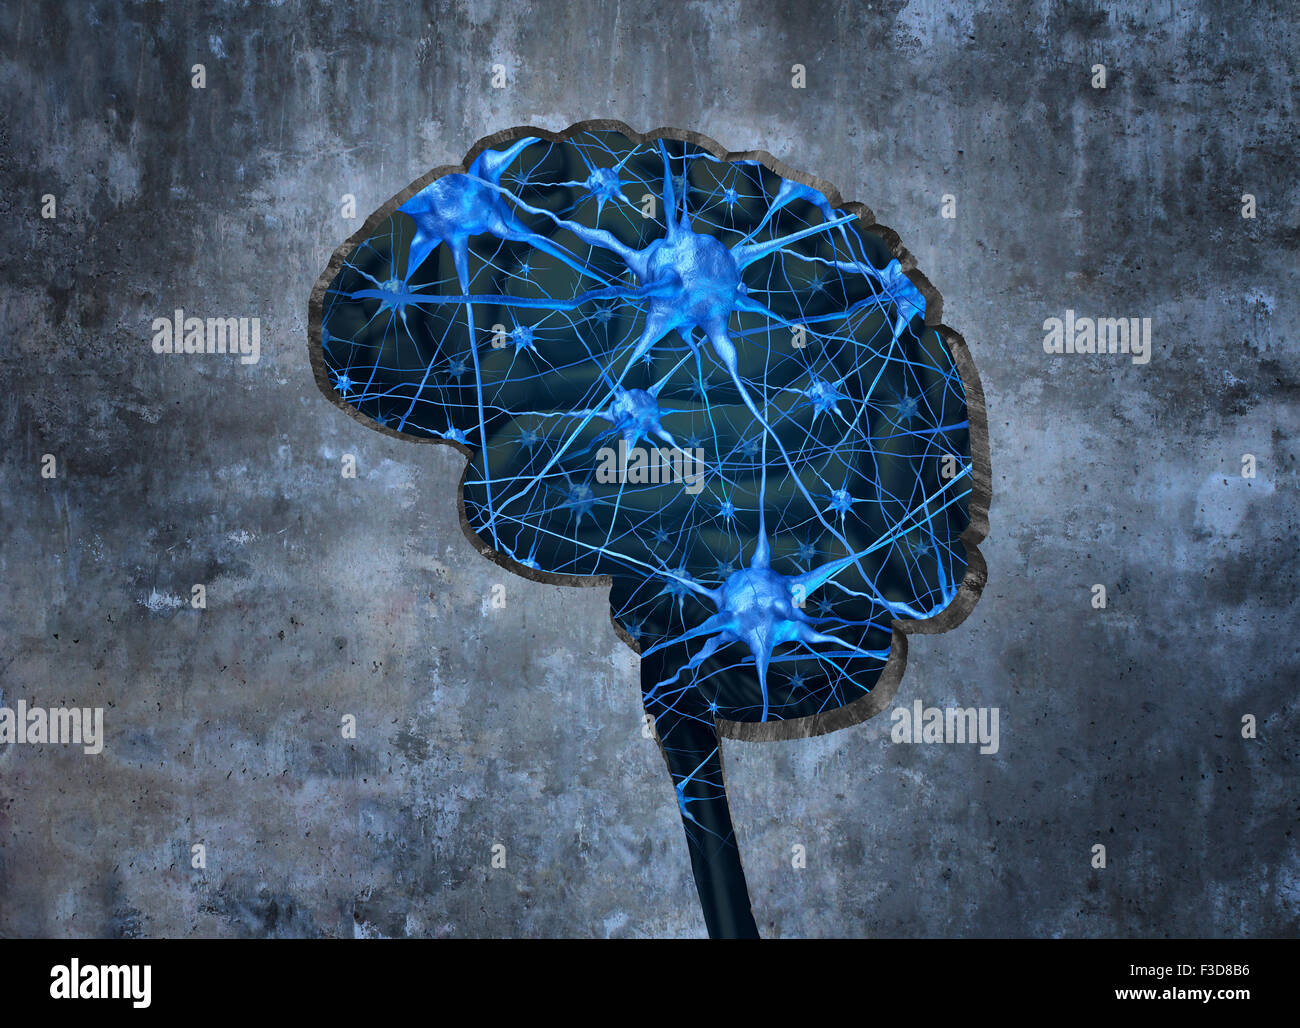 All'interno di neurologia umana il concetto di ricerca esaminando la mente di un essere umano per sanare la perdita di memoria o di cellule a causa di demenza e altre malattie neurologiche come un foro sagomato come un cervello in un muro di cemento con neuroni. Foto Stock